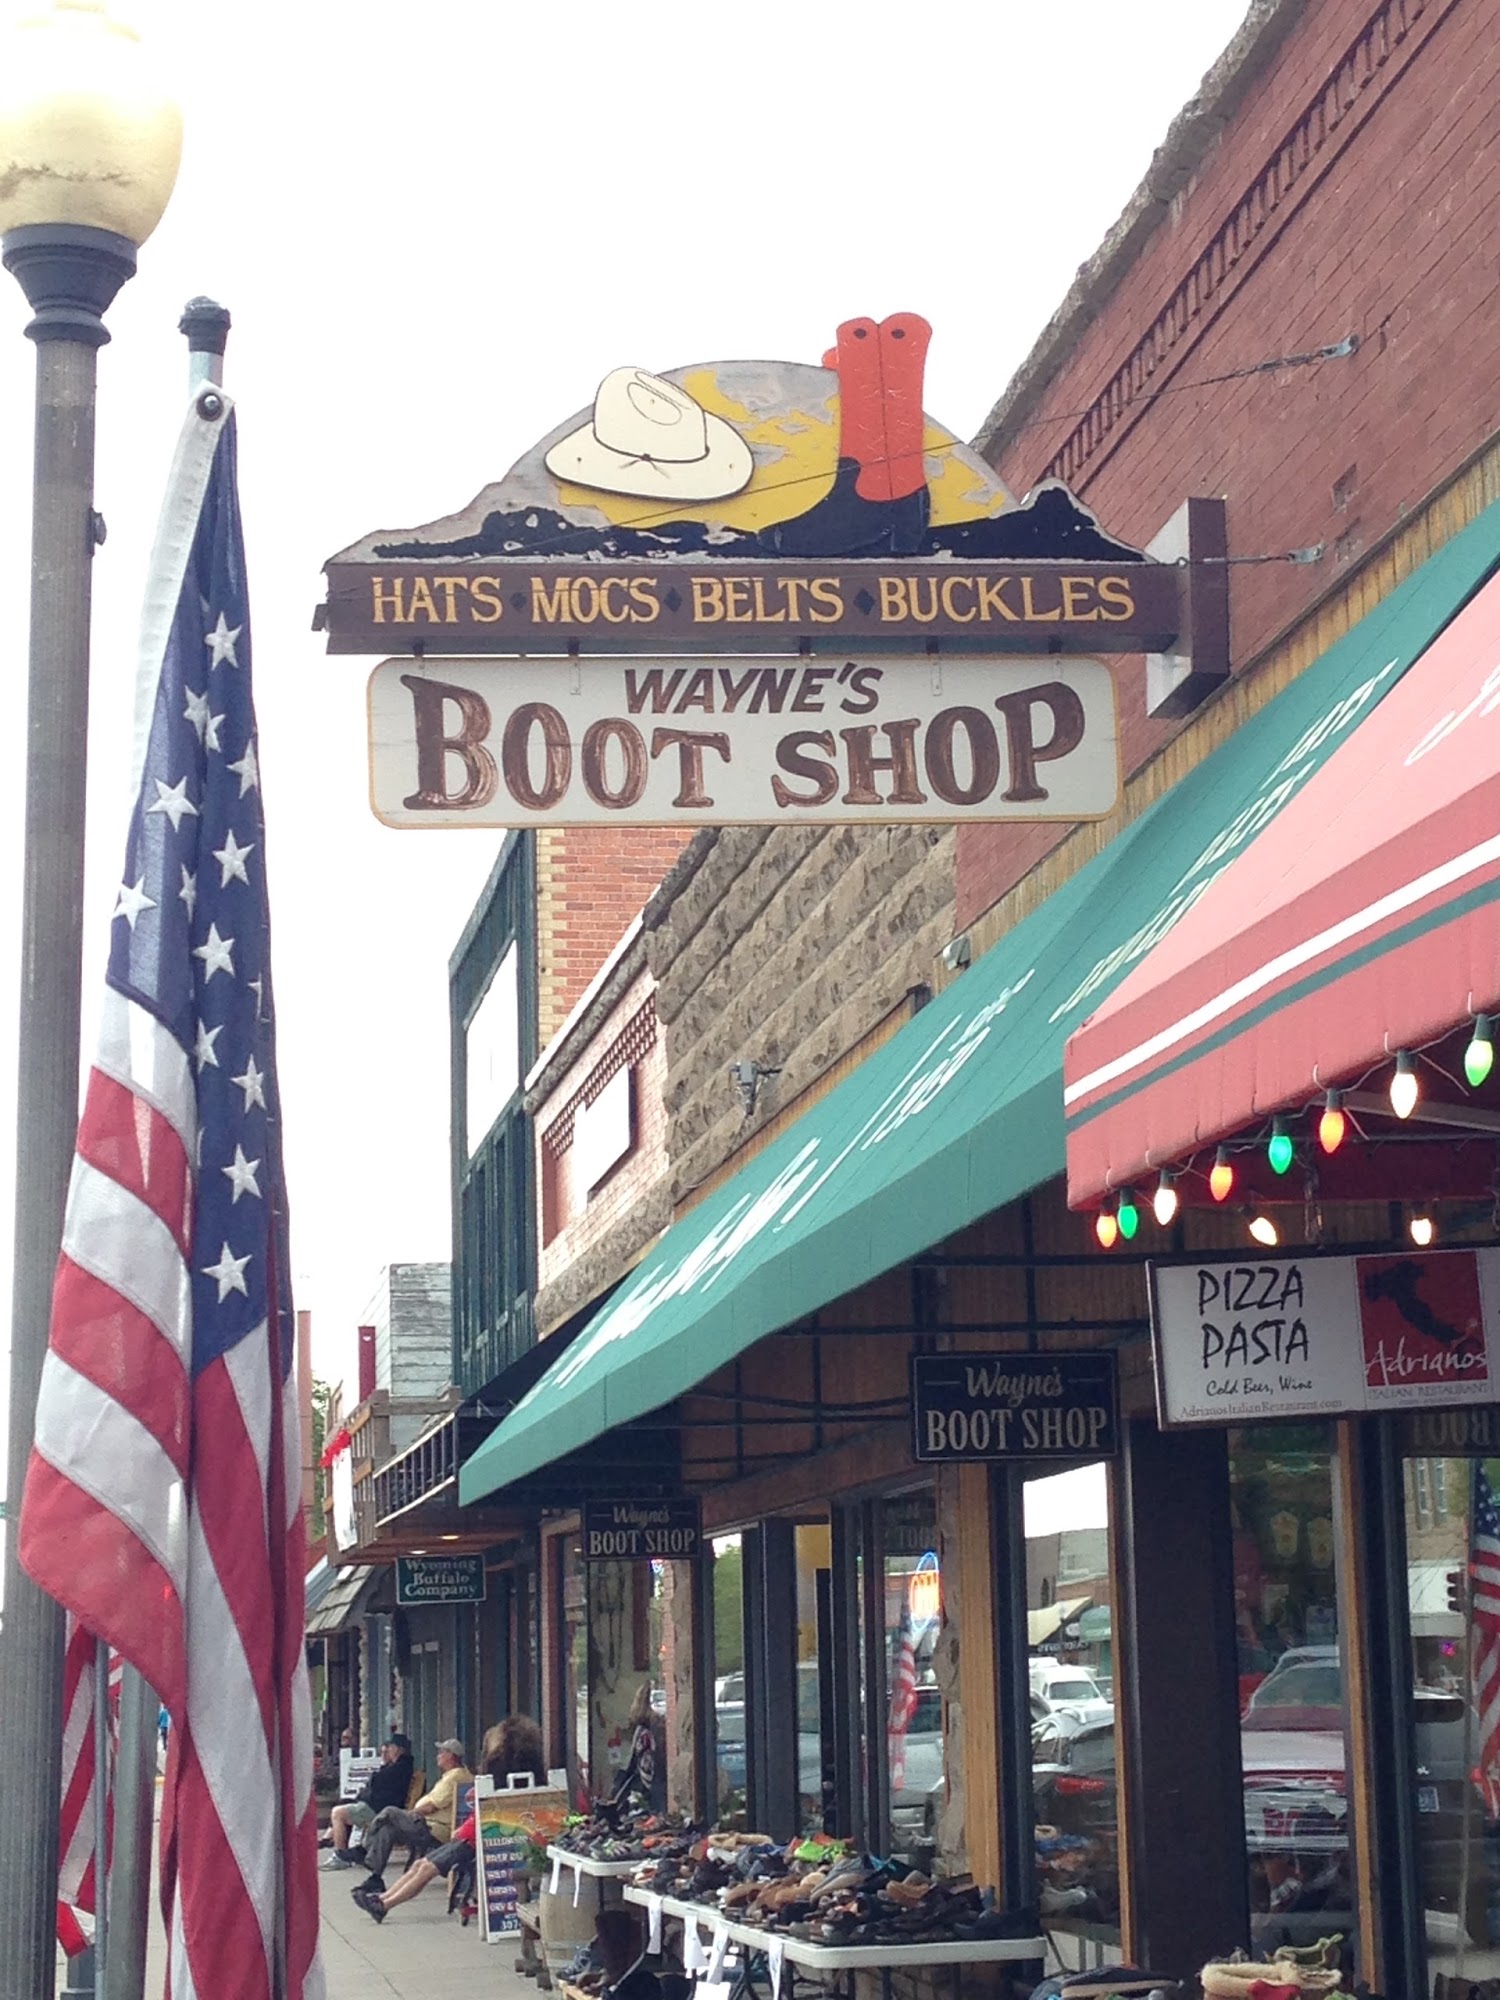 Wayne's Boot Shop